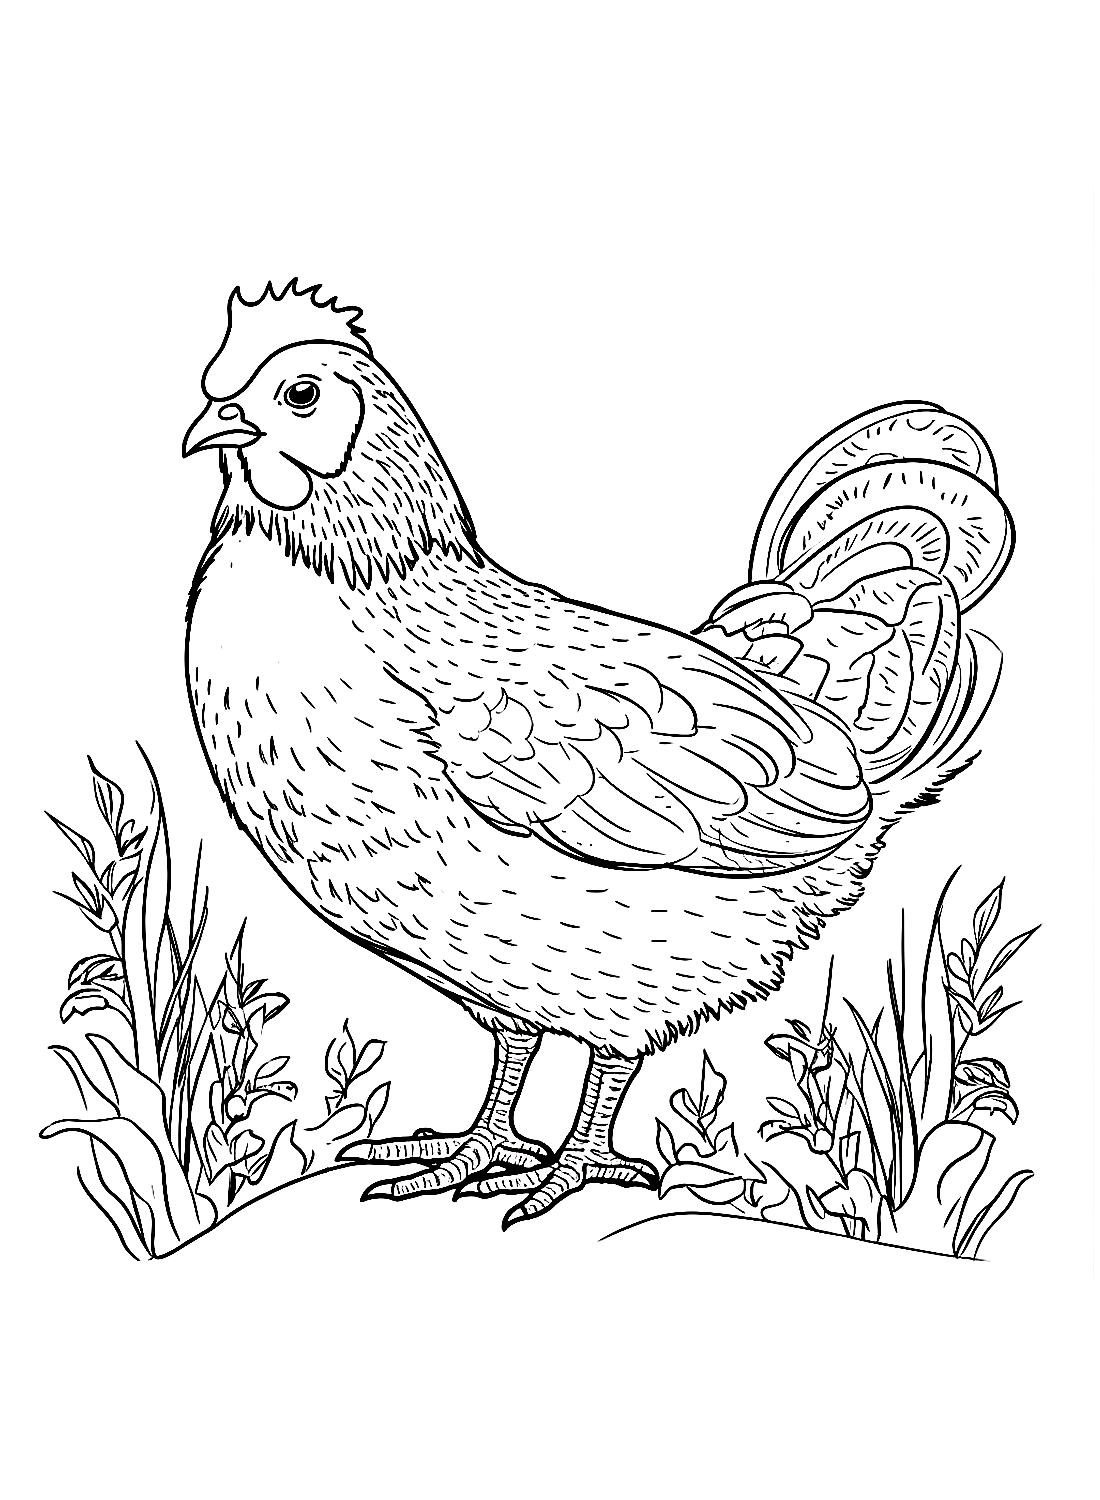 La poule se promène dans le jardin de Hen